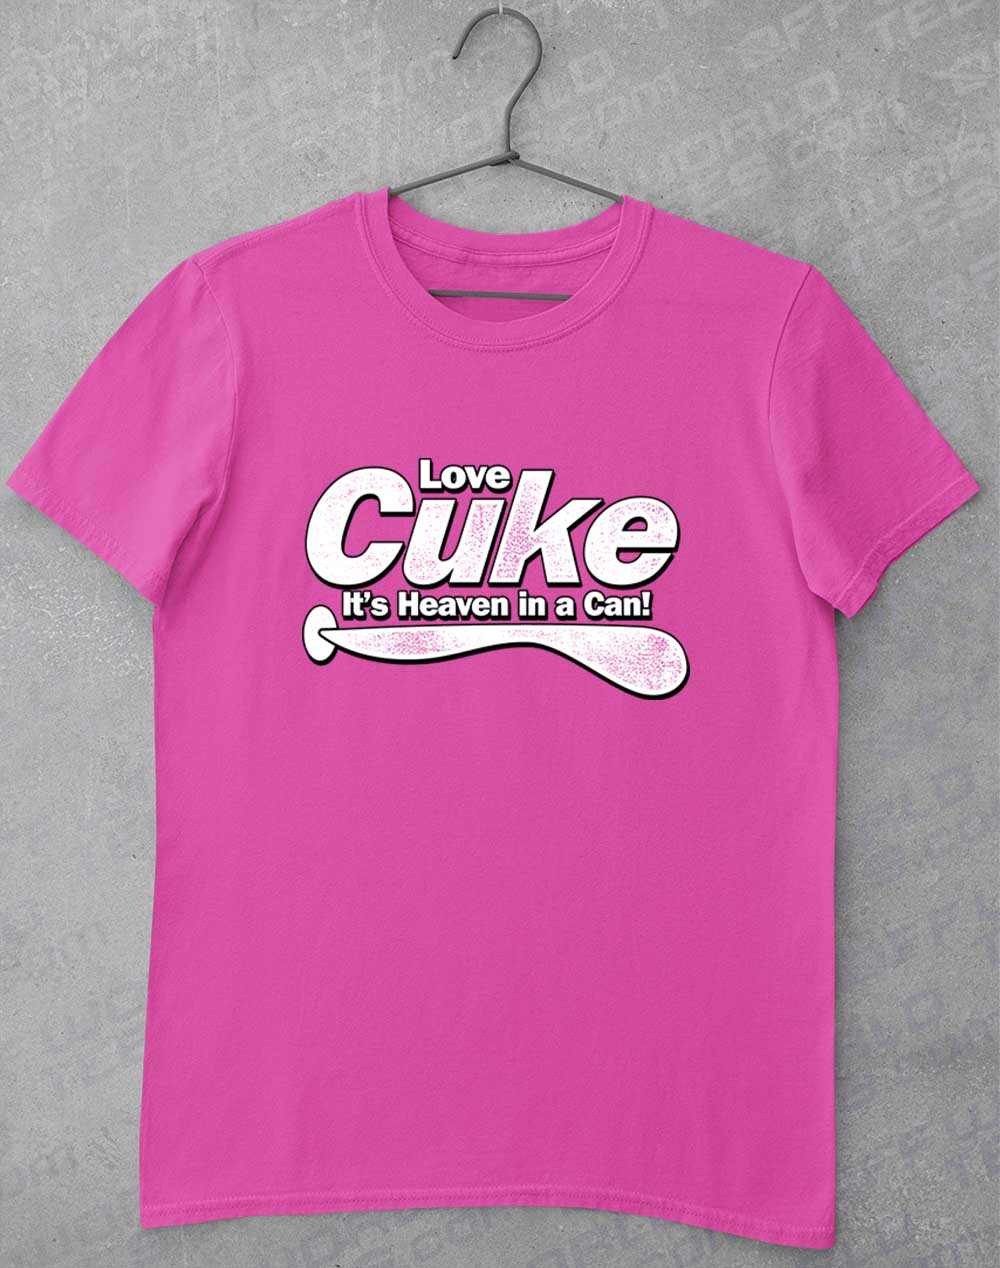 Azalea - Cuke Heaven in a Can T-Shirt